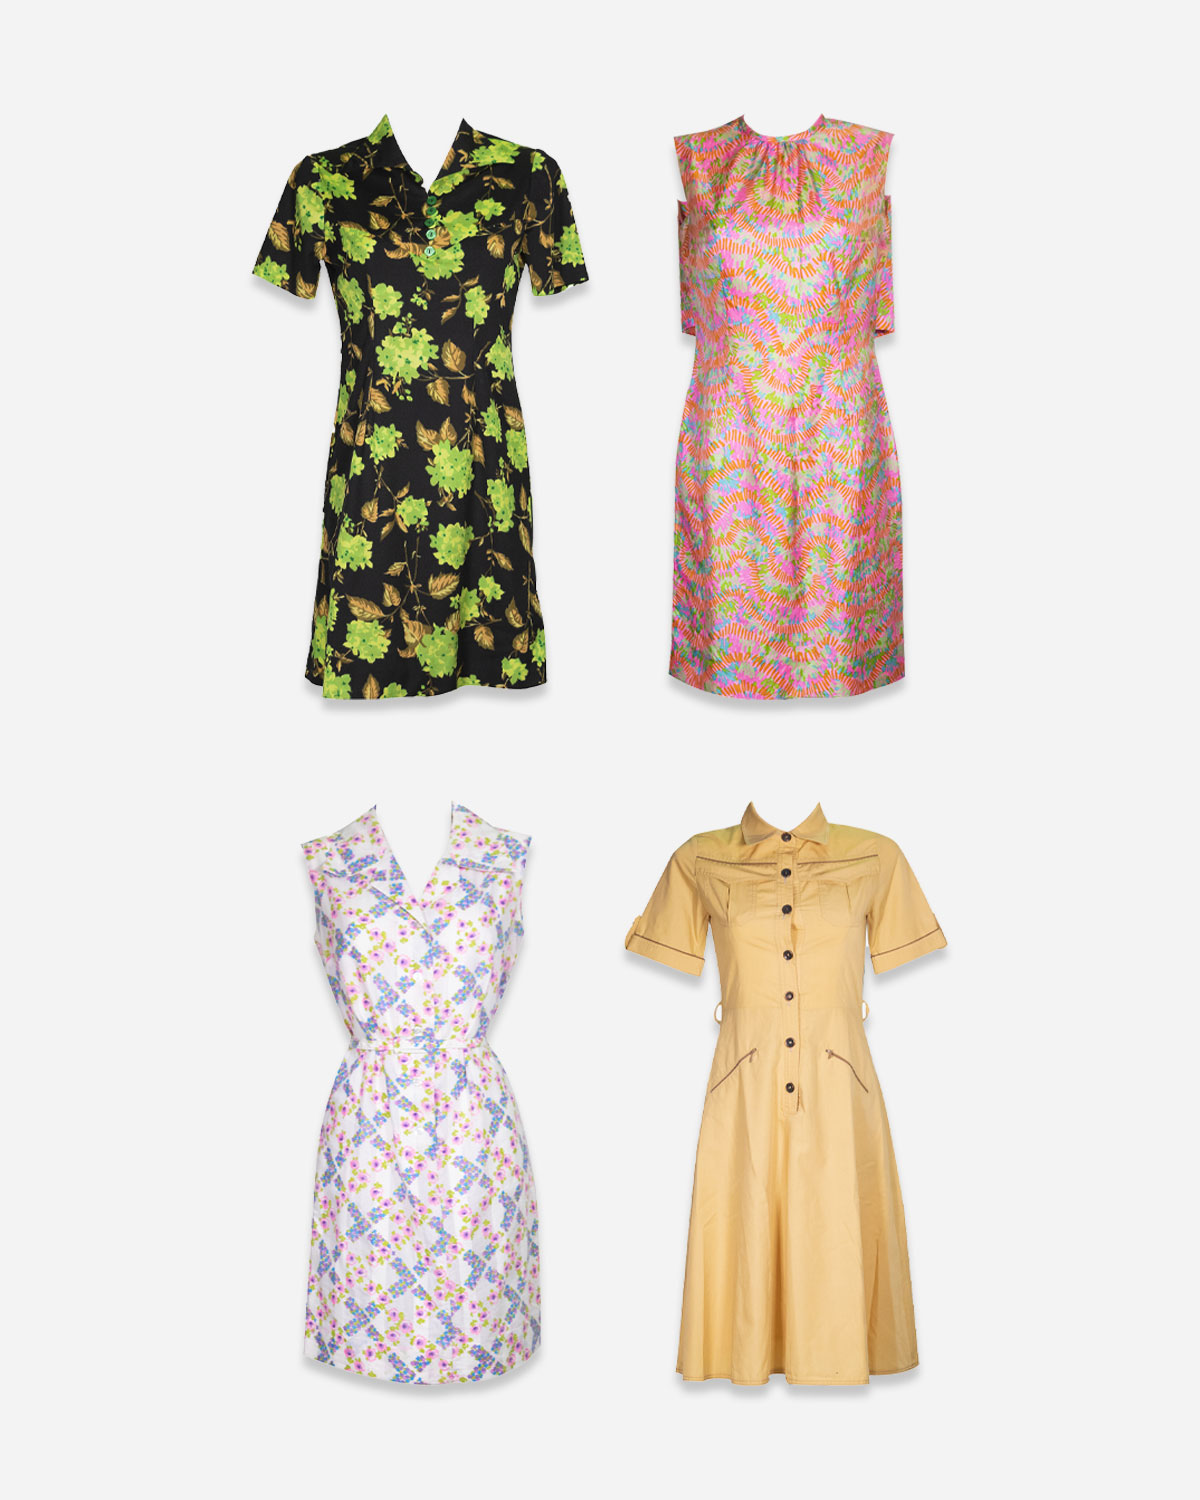 Women's 60s/70s dresses: 4 pieces